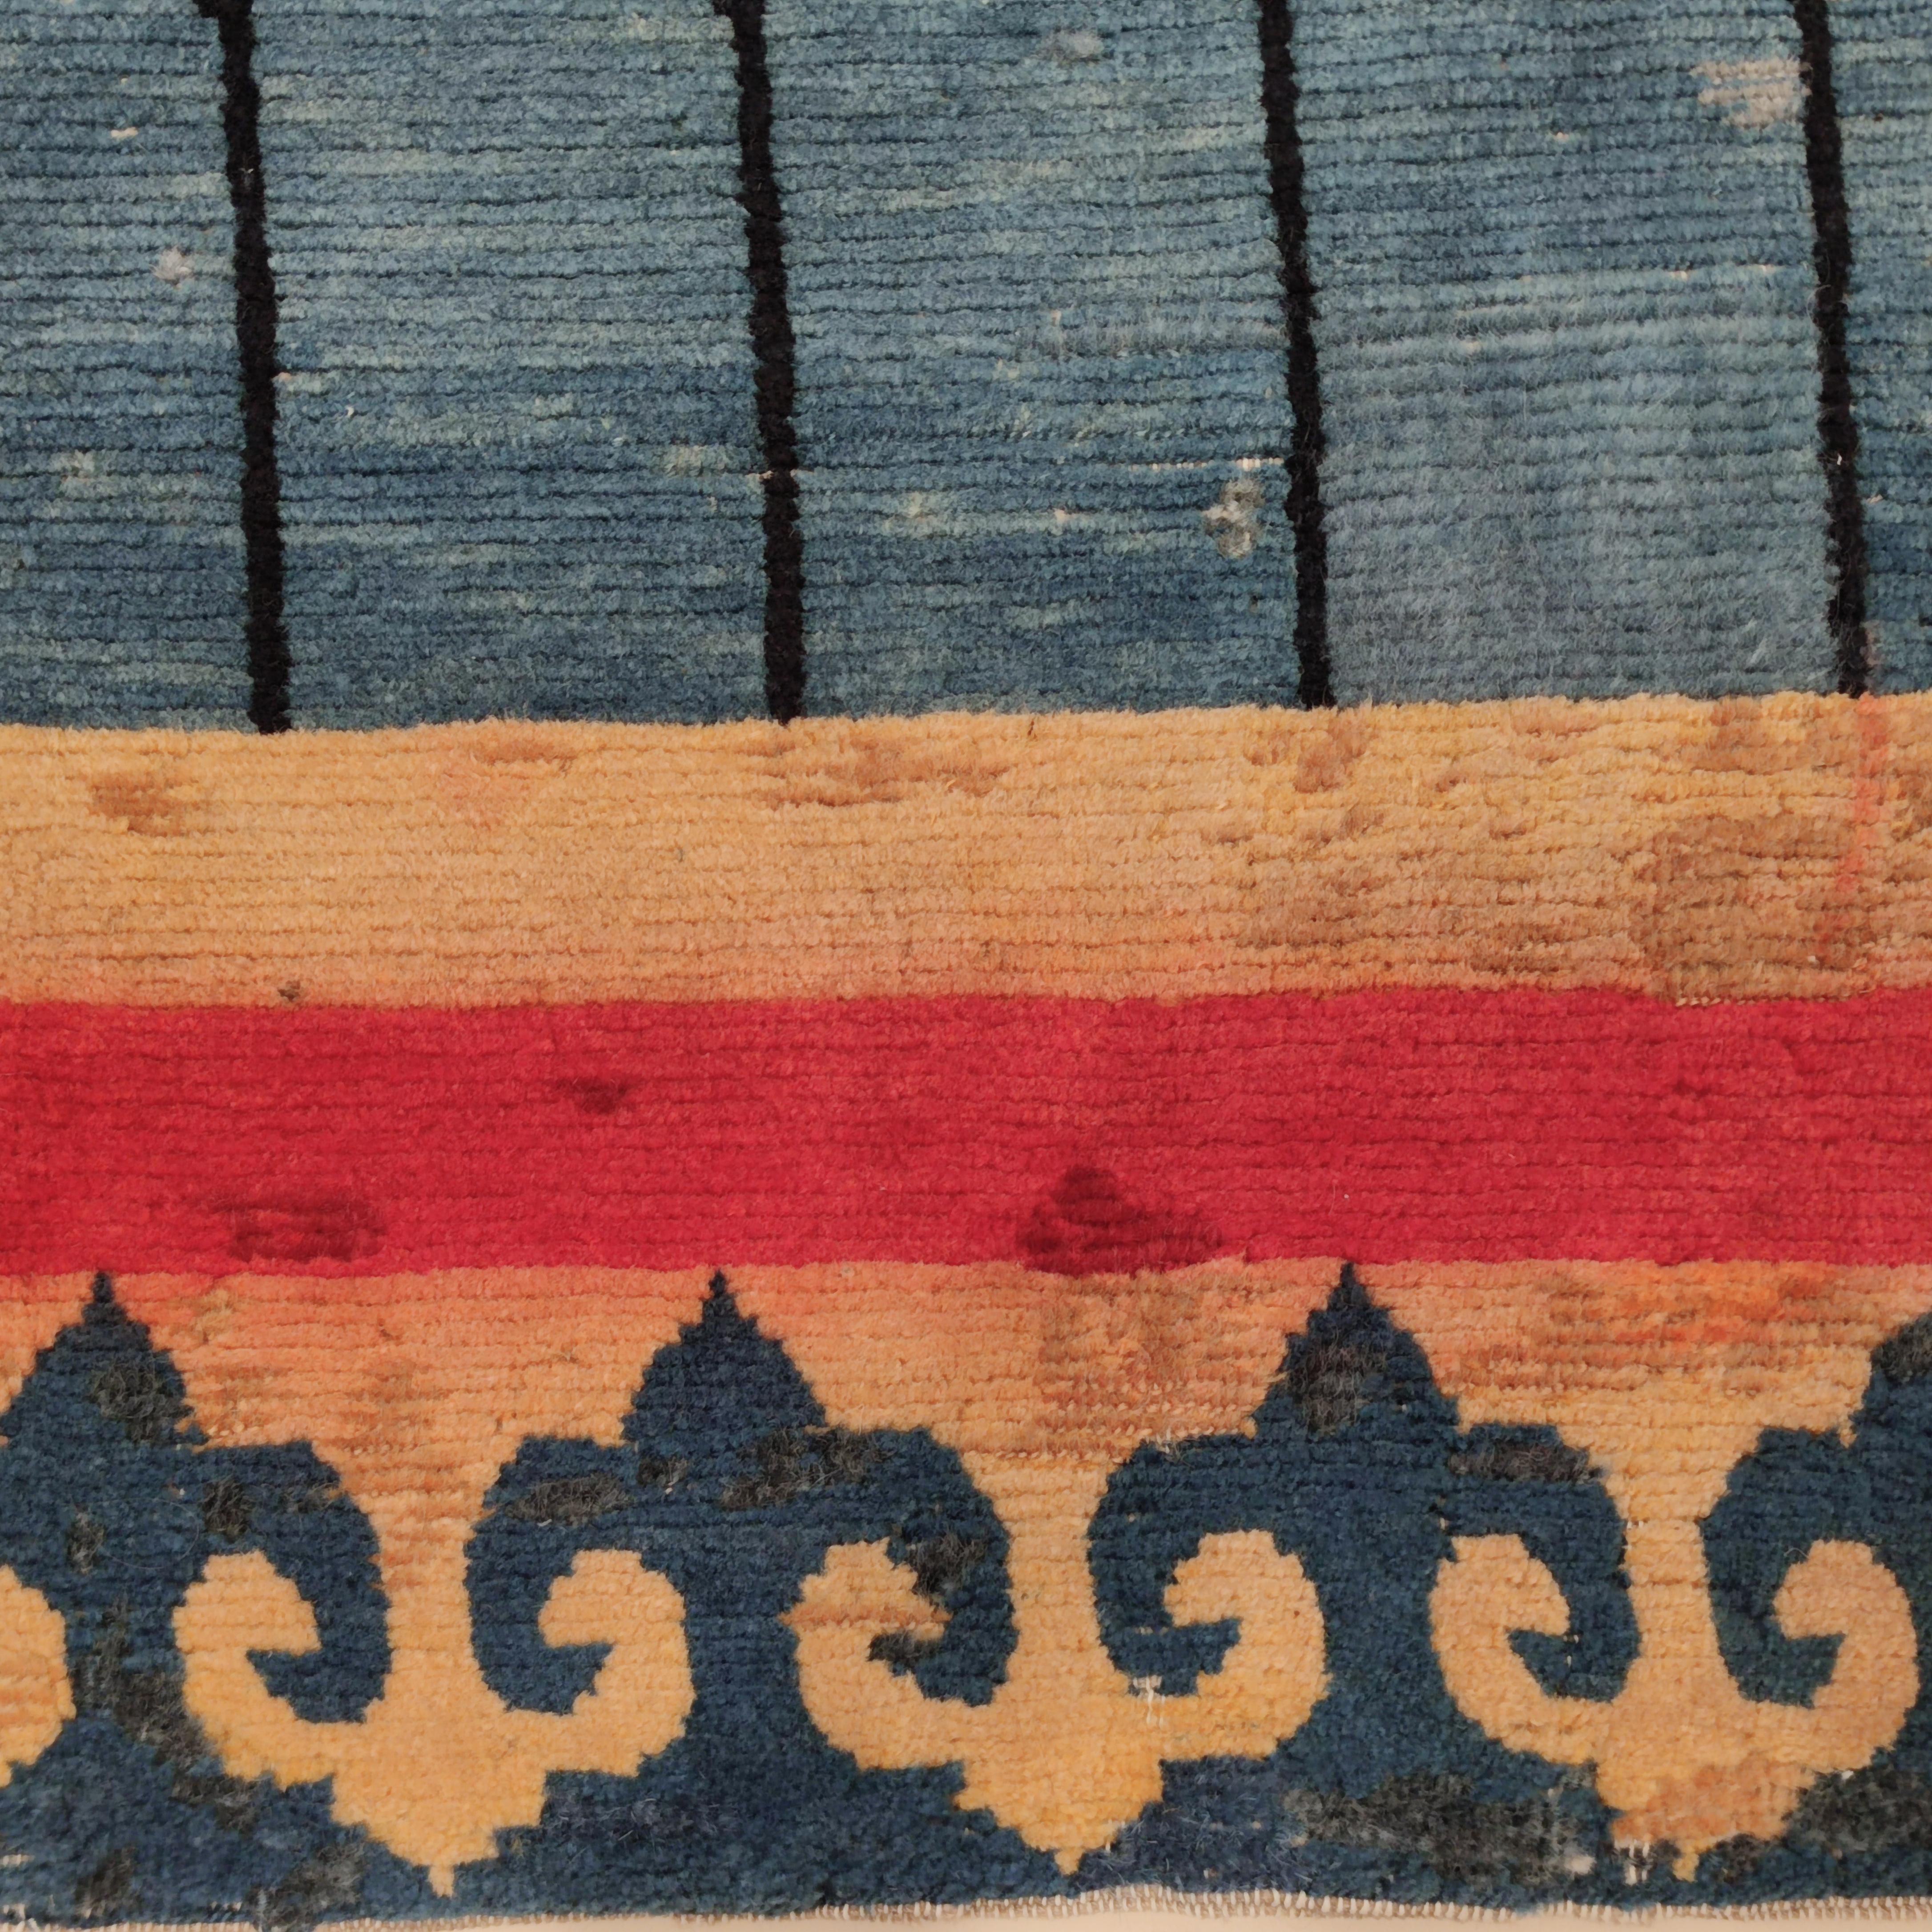 Ein äußerst seltenes Exemplar eines tibetischen Türteppichs, der so genannt wird, weil das Muster genau die gleichen Motive nachahmt, die auf den Seiden- und Baumwollbrokaten zu finden sind, die manchmal die Fassaden der traditionellen tibetischen